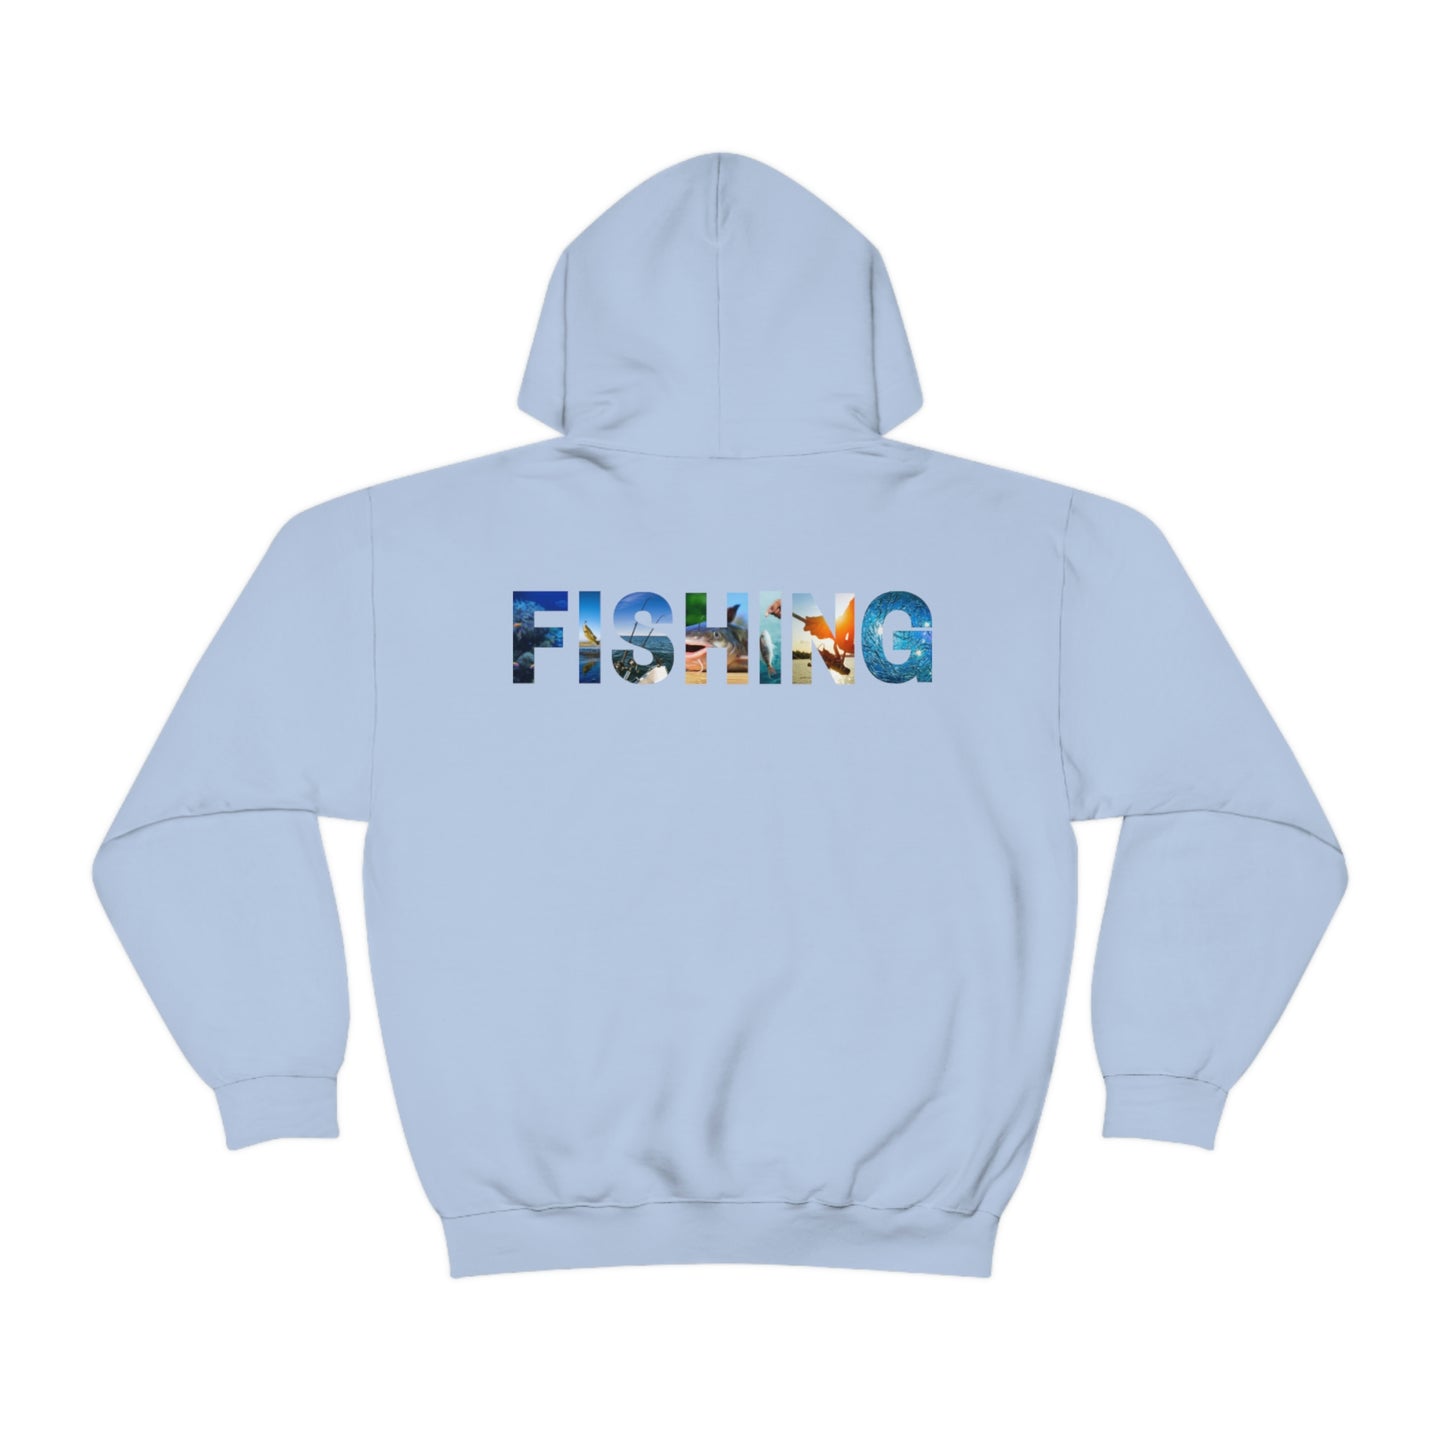 Fishing Hooded Sweatshirt